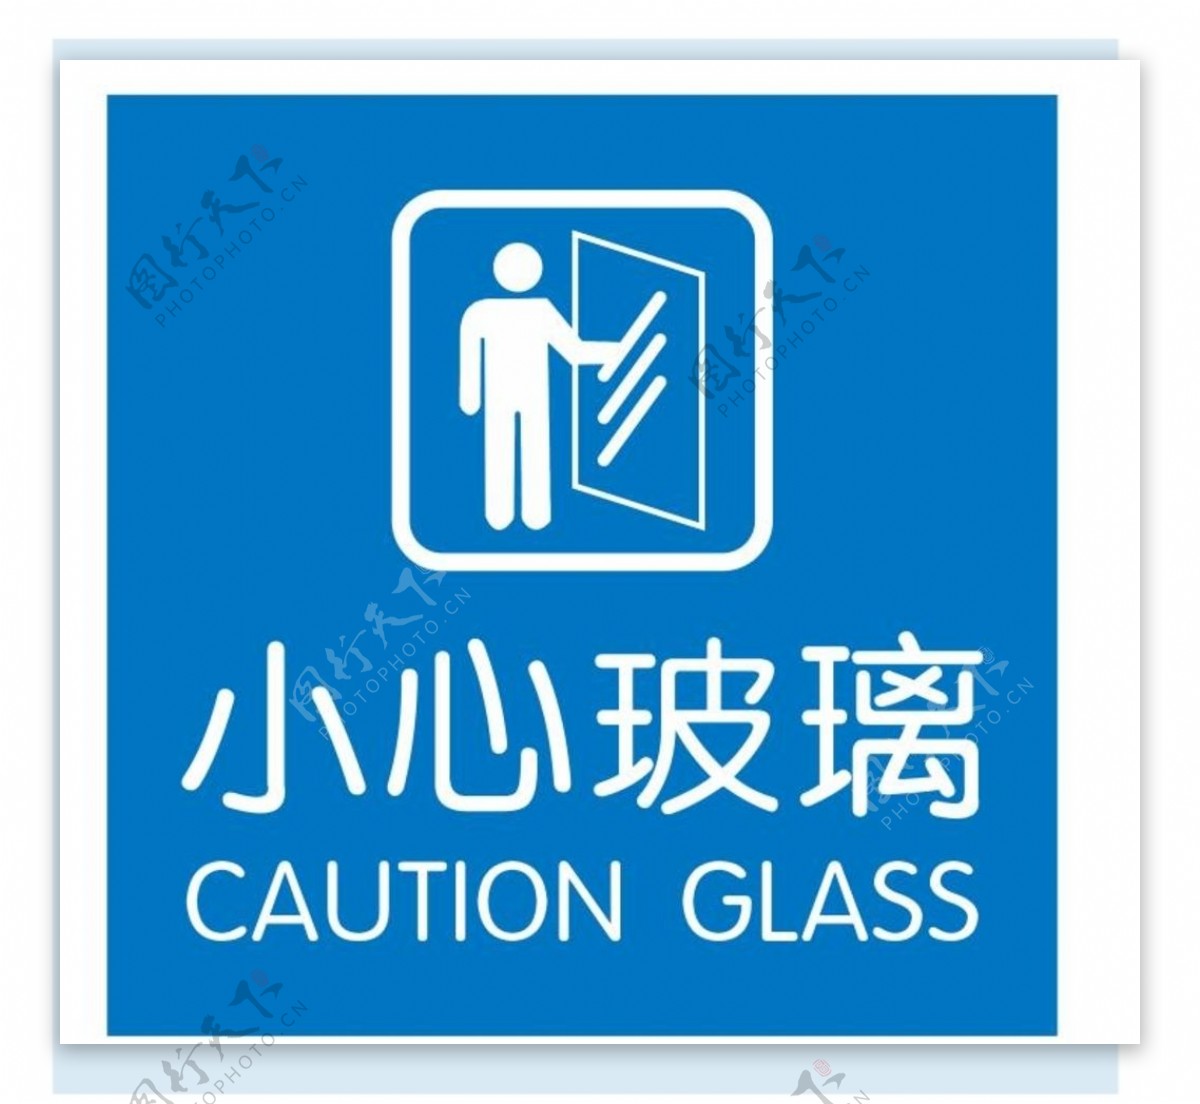 矢量小心玻璃提示图片